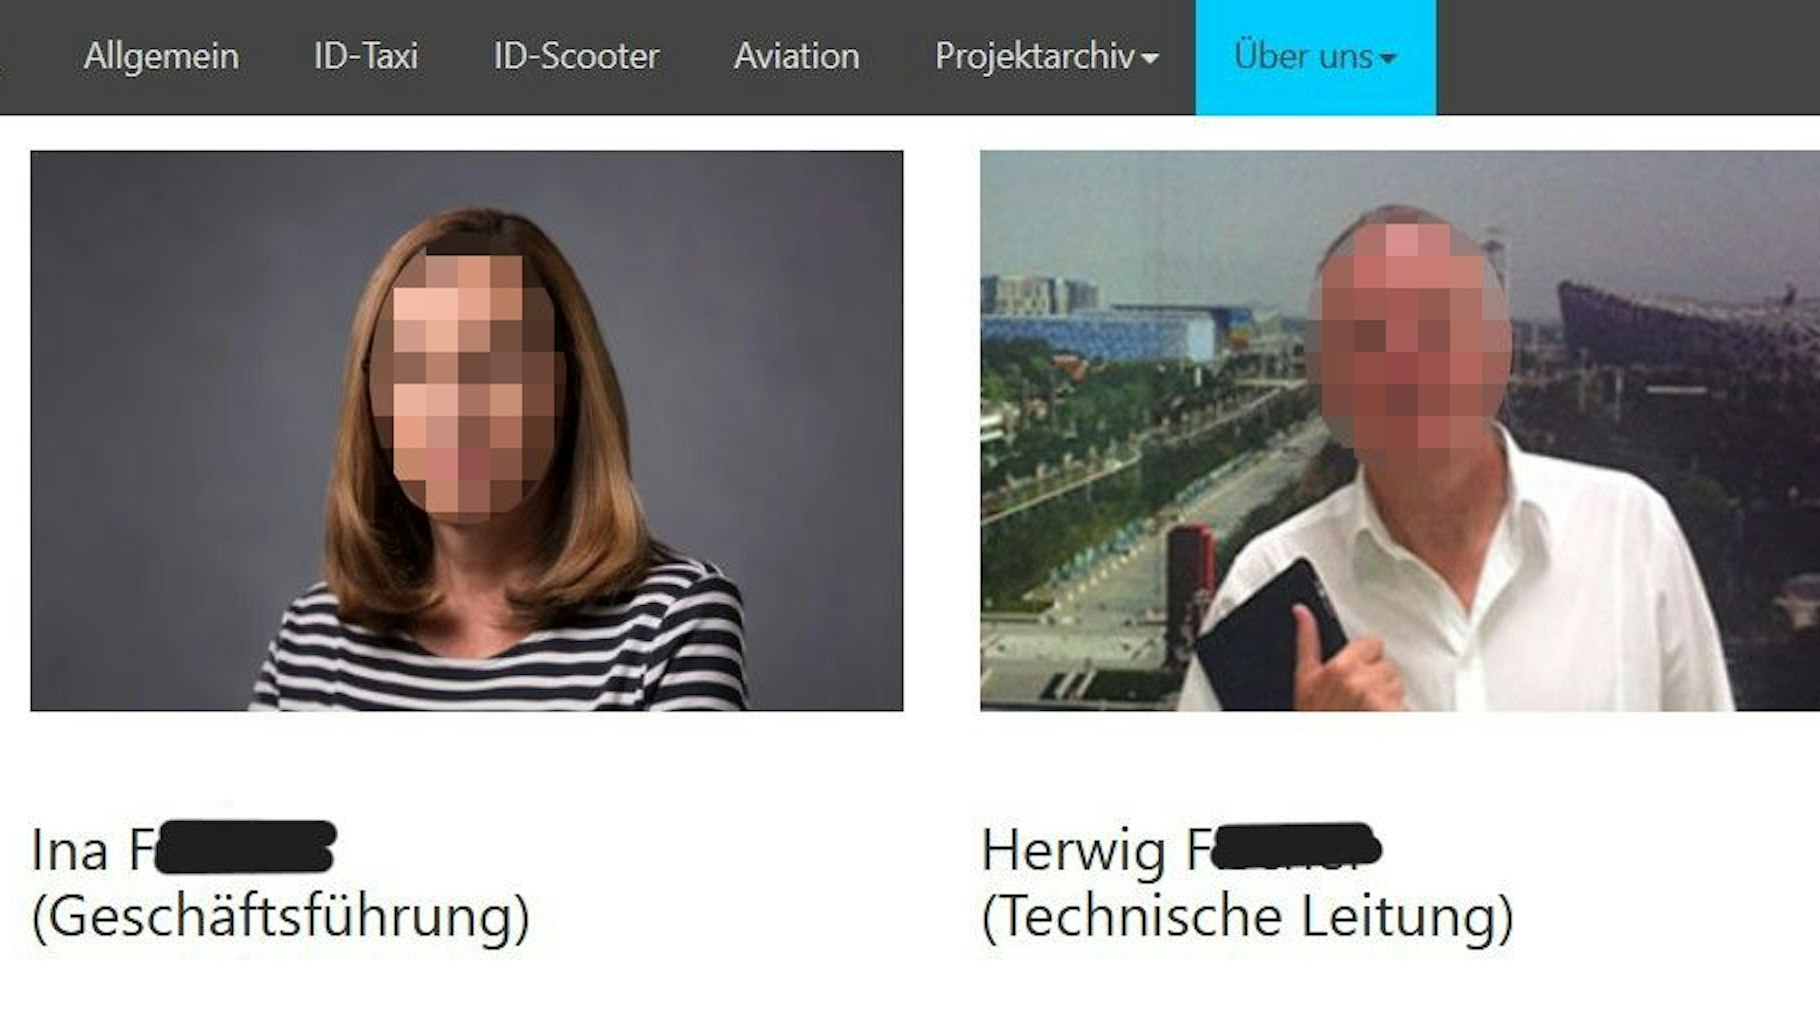 Verdacht auf Spionage für China: Ina F. und Herwig F. sind auf Porträtbildern von der Hompage ihres Unternehmens zu sehen. Die Gesichter sind aber unkenntlich gemacht.